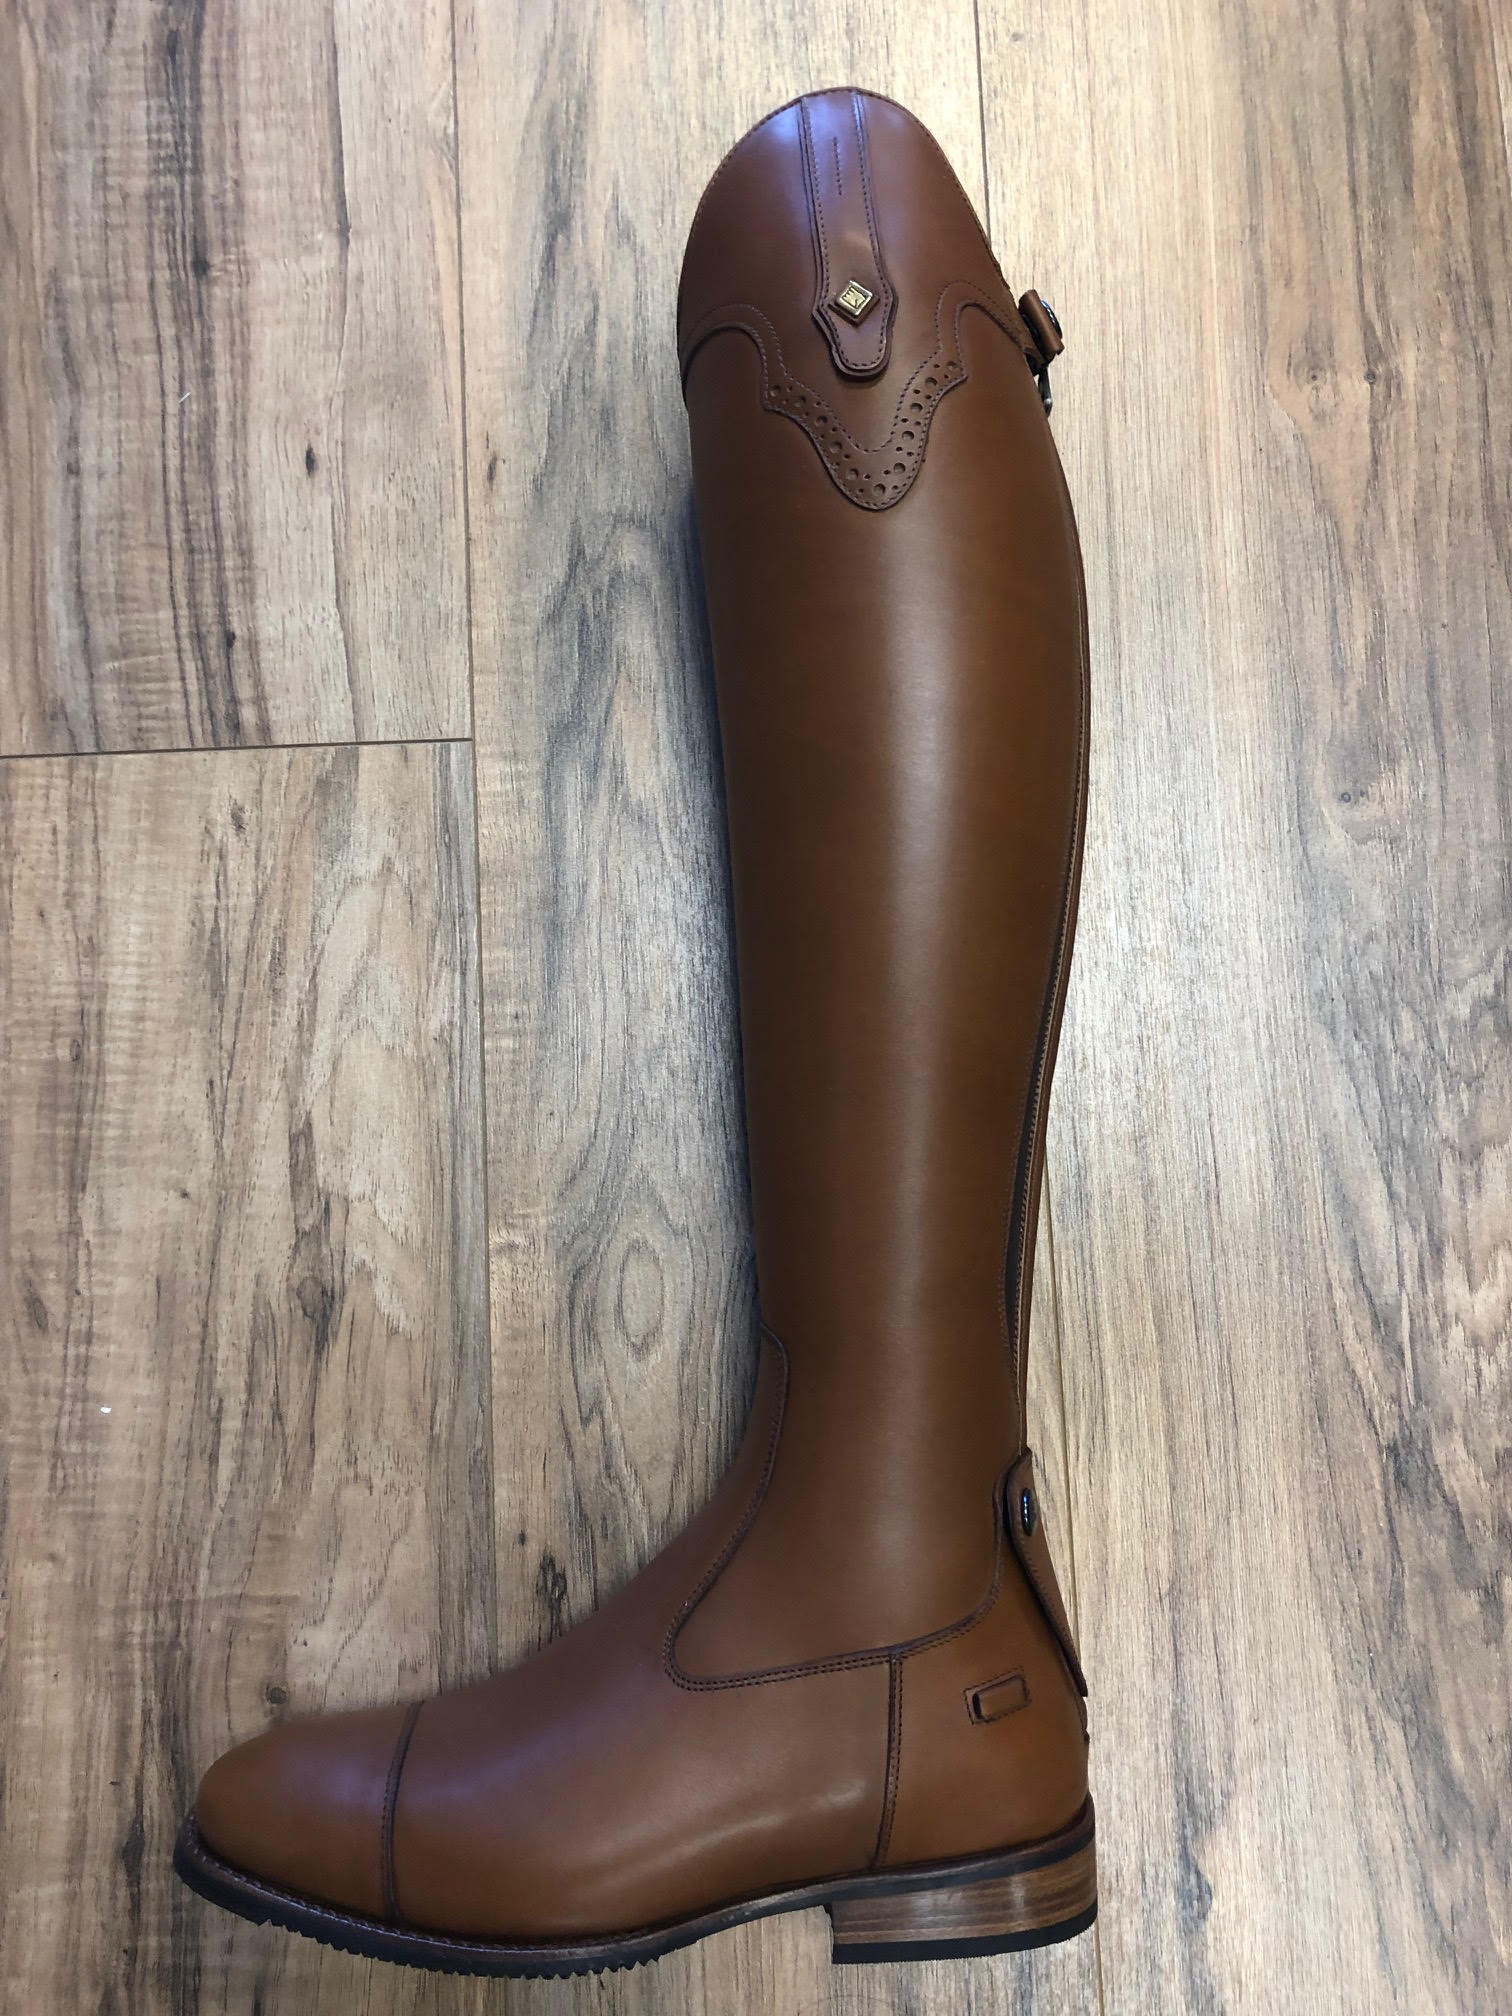 Deniro Custom Tall boot